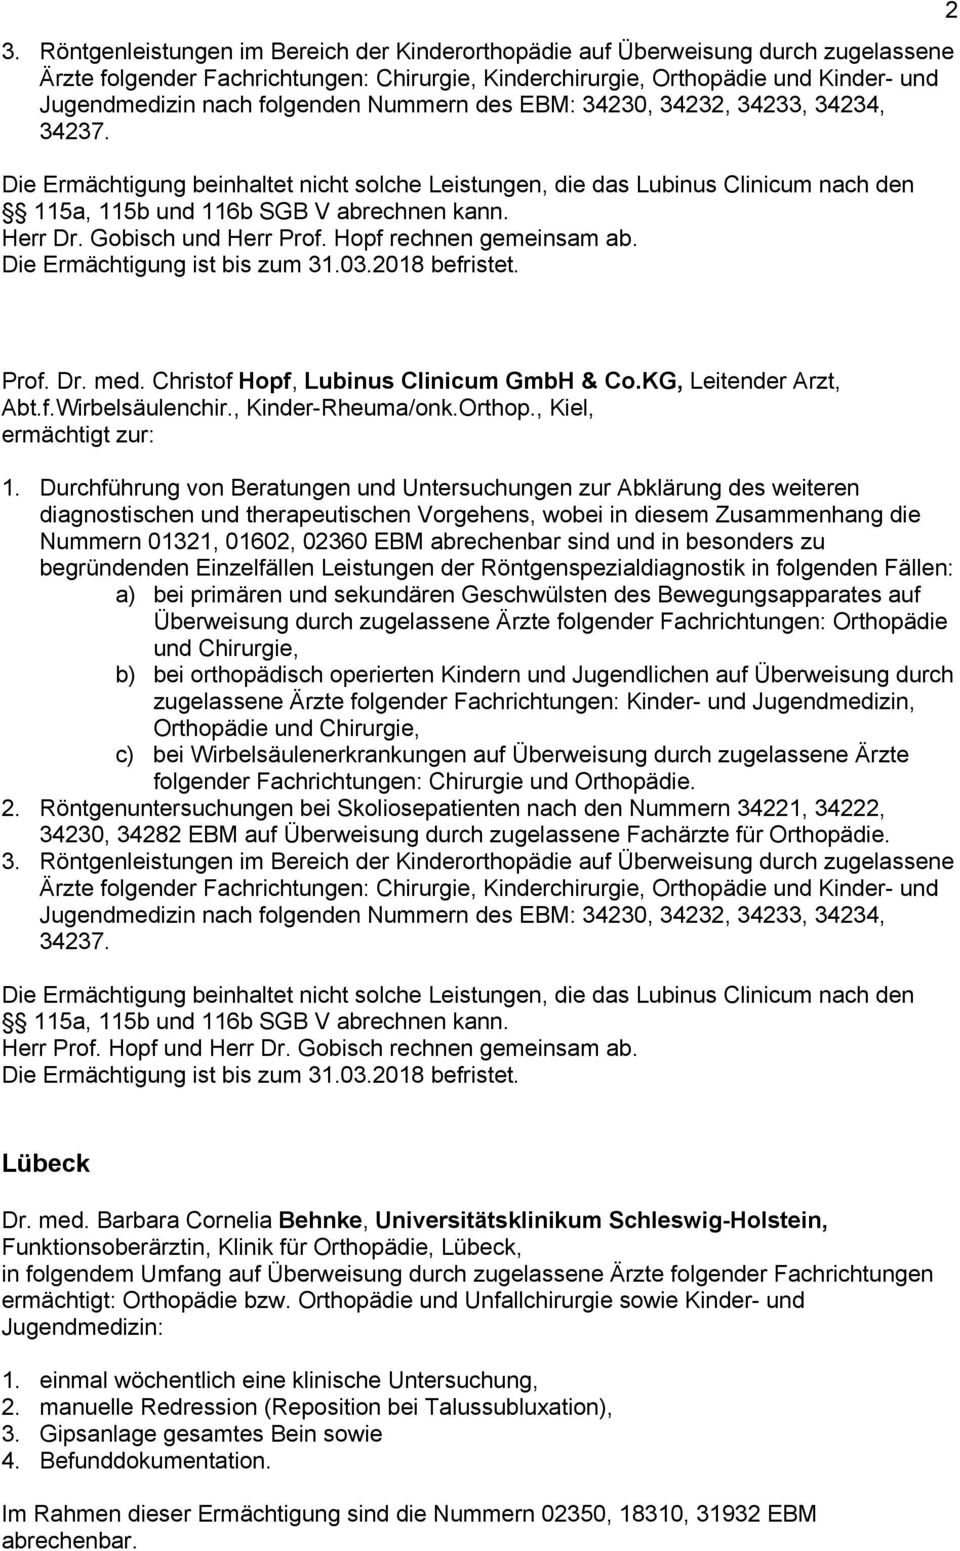 Gobisch und Herr Prof. Hopf rechnen gemeinsam ab. 2 Prof. Dr. med. Christof Hopf, Lubinus Clinicum GmbH & Co.KG, Leitender Arzt, Abt.f.Wirbelsäulenchir., Kinder-Rheuma/onk.Orthop.